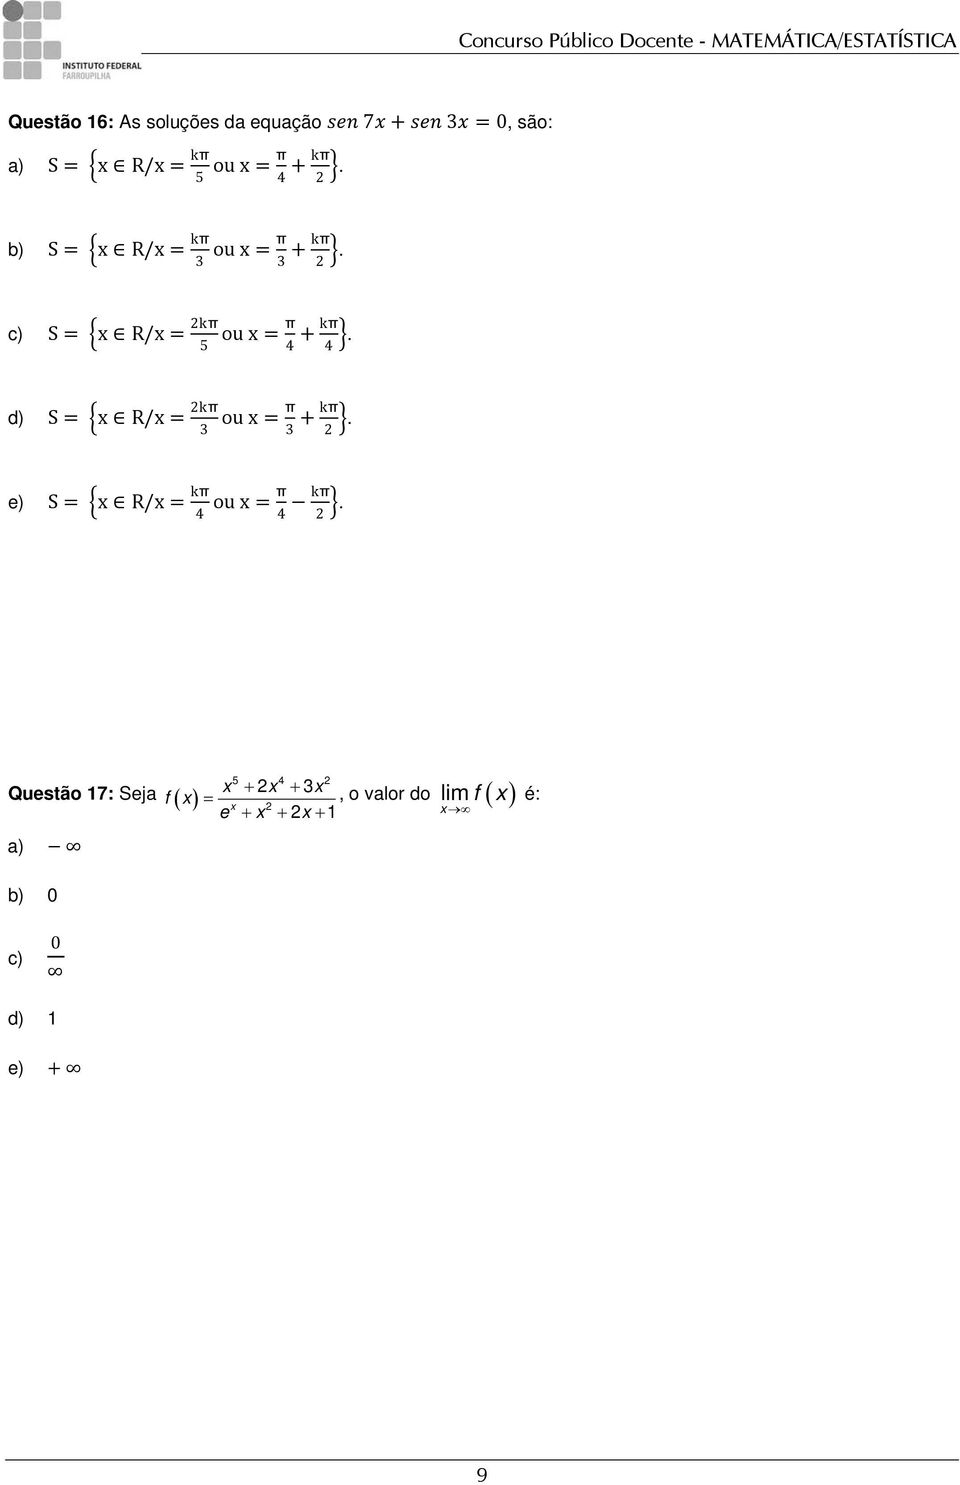 d) S = x R/x = 2kπ 3 ou x = π 3 + kπ 2. e) S = x R/x = kπ 4 ou x = π 4 kπ 2.